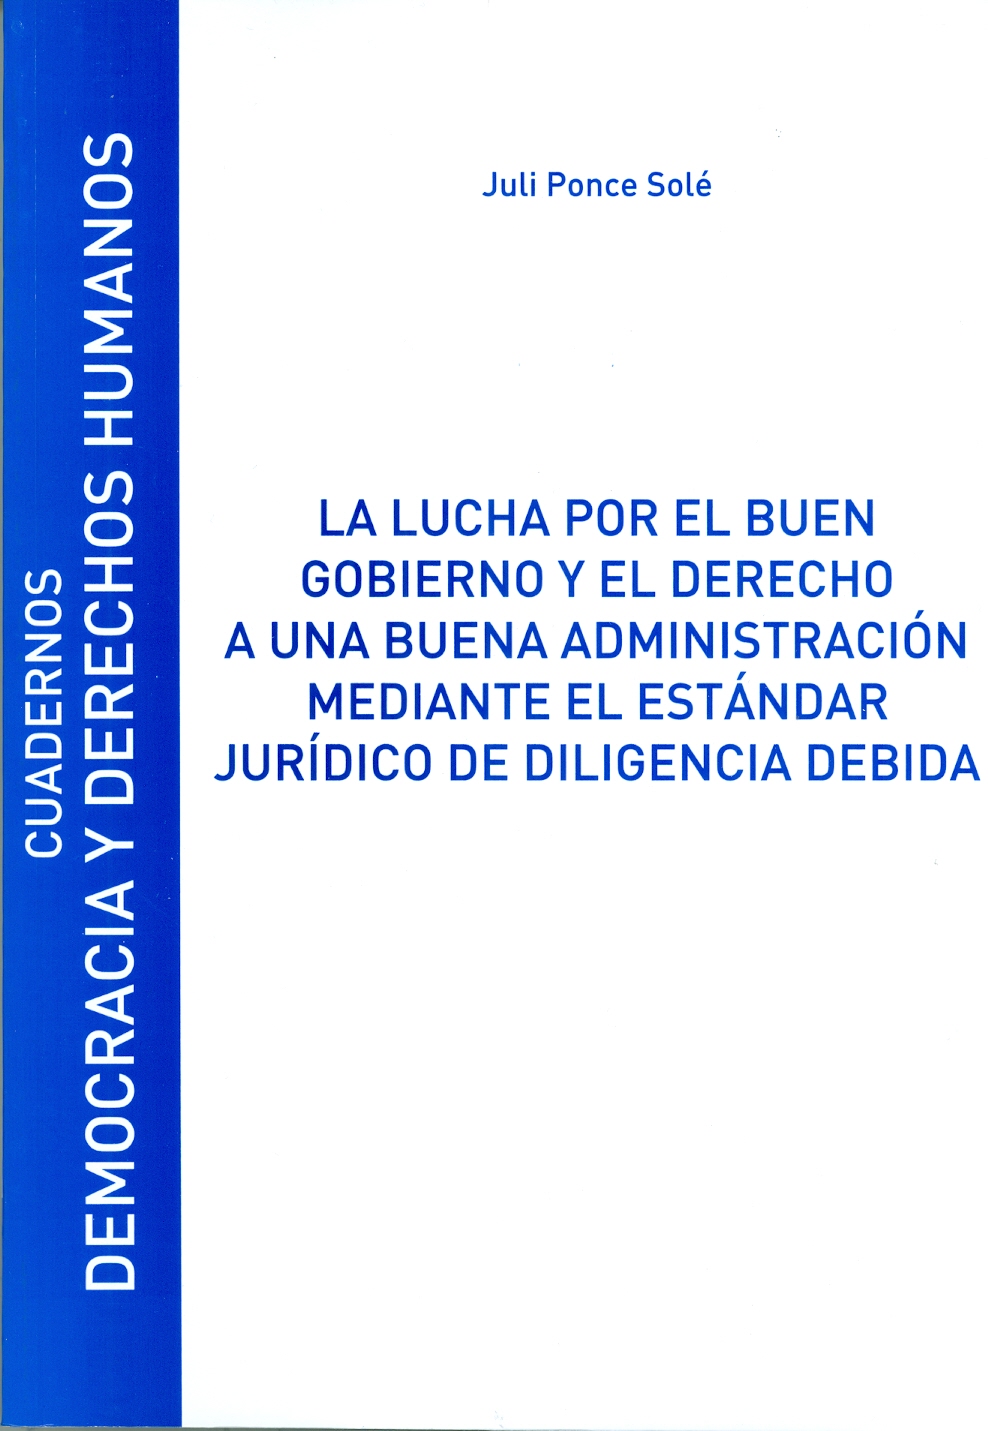 Imagen de portada del libro La lucha por el buen gobierno y el derecho a una buena administración mediante el estándar jurídico de diligencia debida